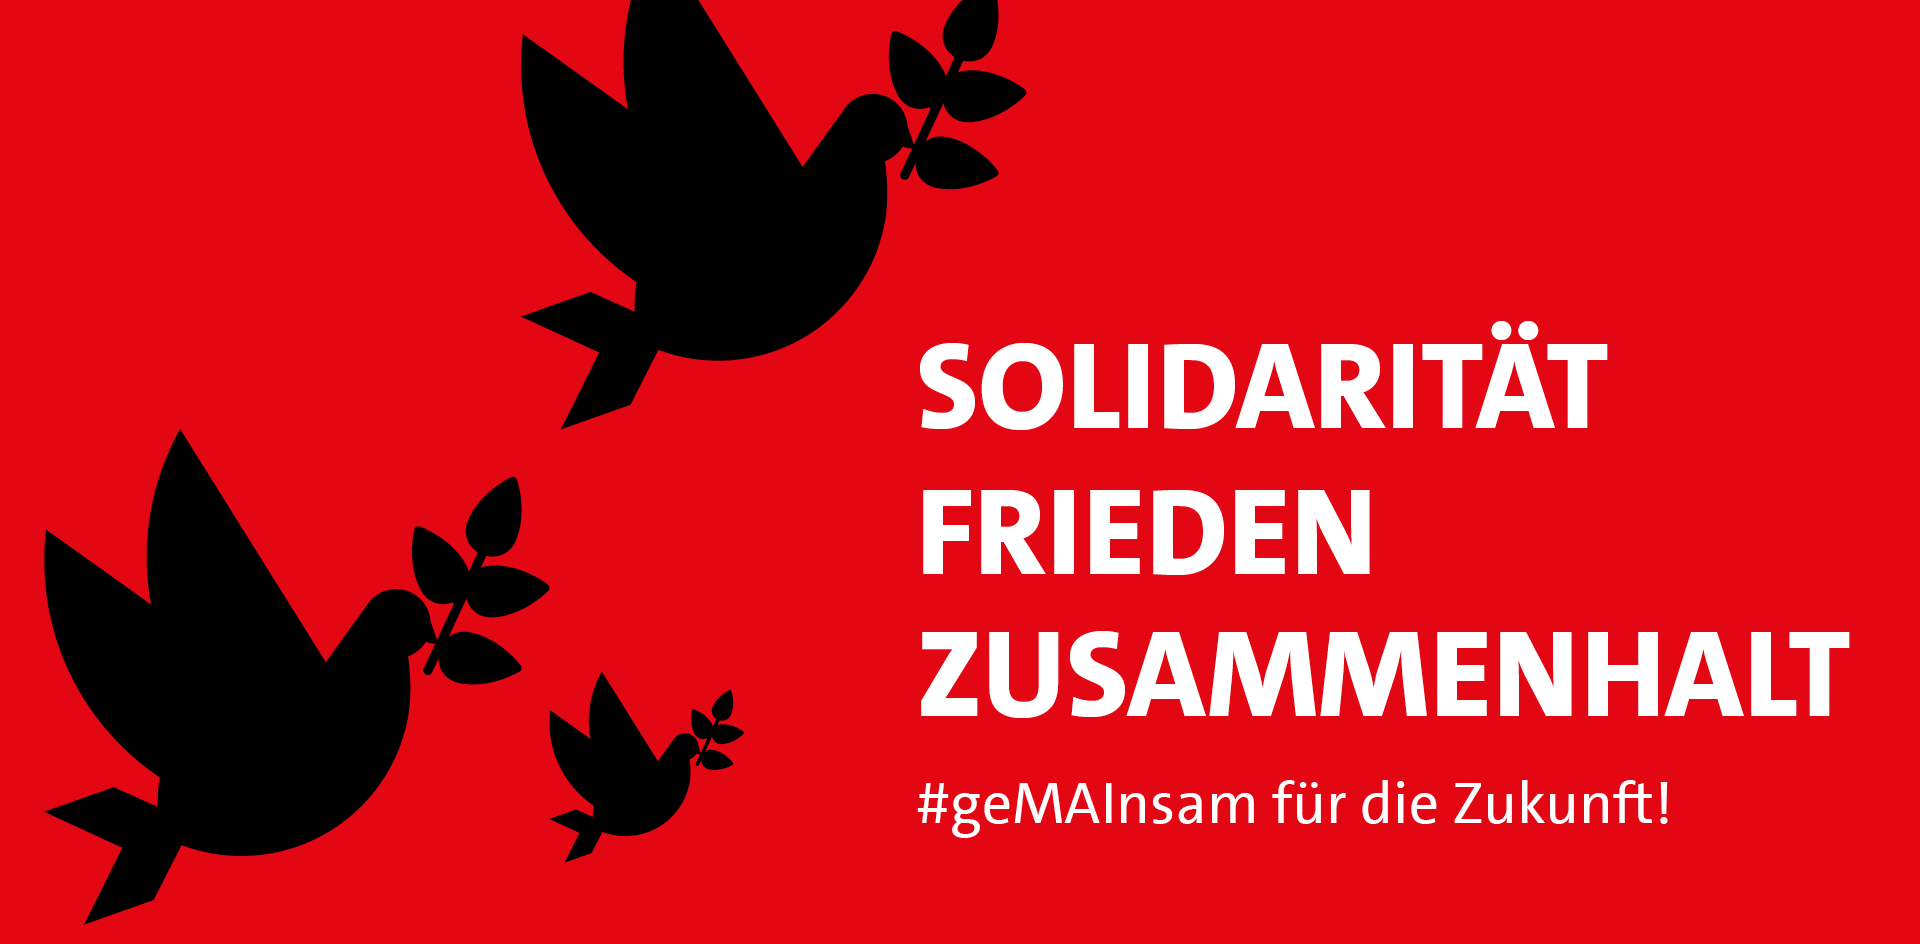 Solidarität, Frieden, Zusammenhalt #GemeinsamFürDieZukunft